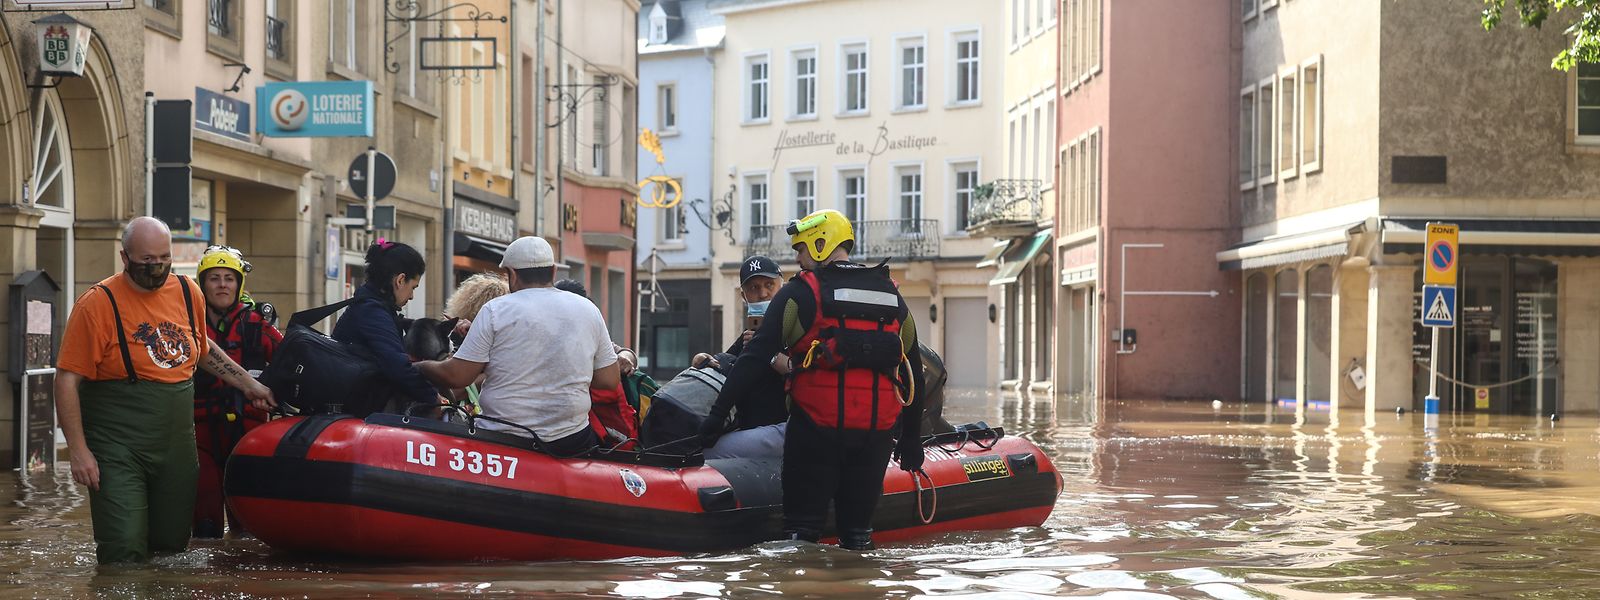 Einwohner von Echternach mussten im vergangenen Sommer per Schlauchboot evakuiert werden.